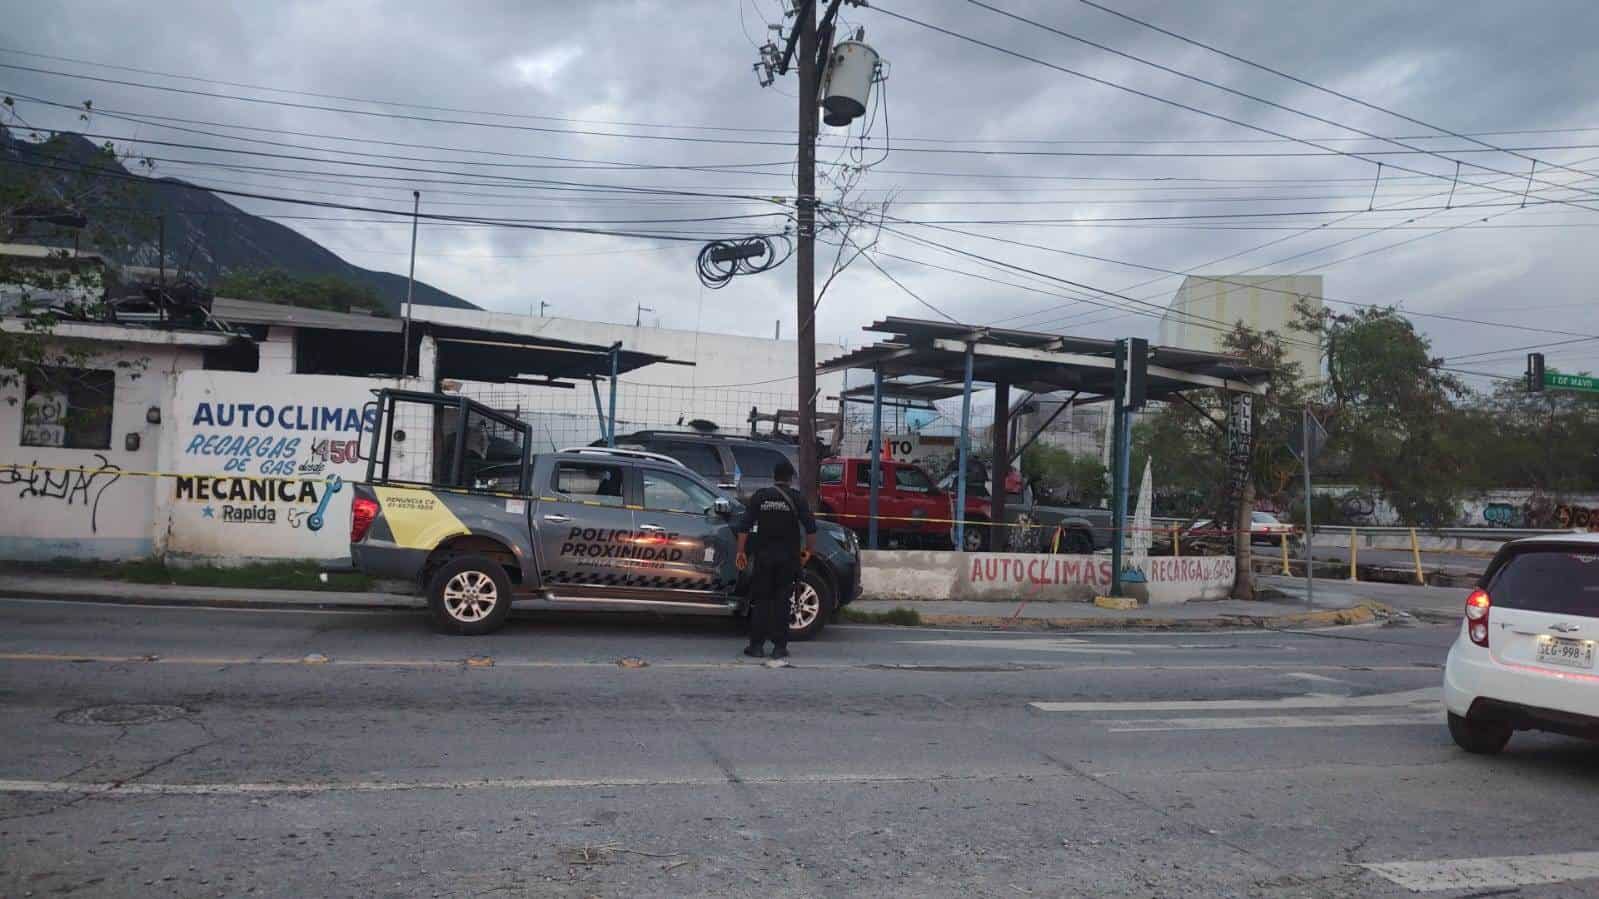 Un hombre resultó gravemente herido al ser atacado a balazos cuando se hallaba en un taller de reparación de climas, los agresores huyeron en Santa Catarina.